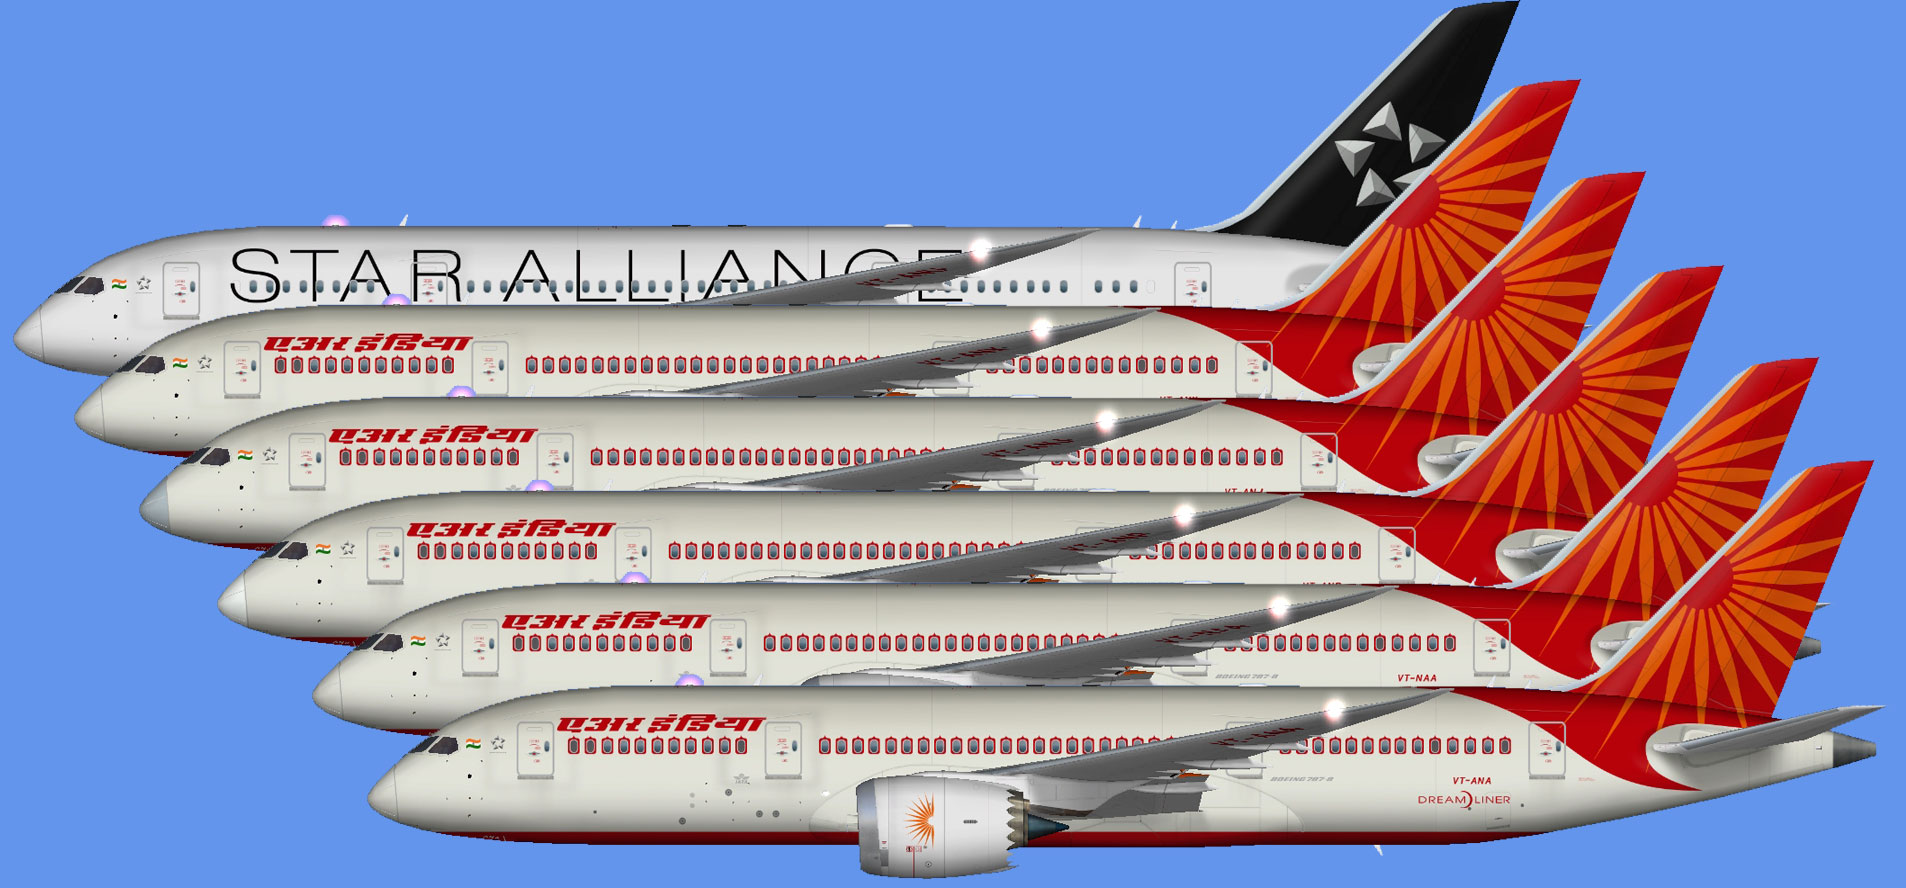 Air India prestes a encomendar mais de 200 aviões da Boeing